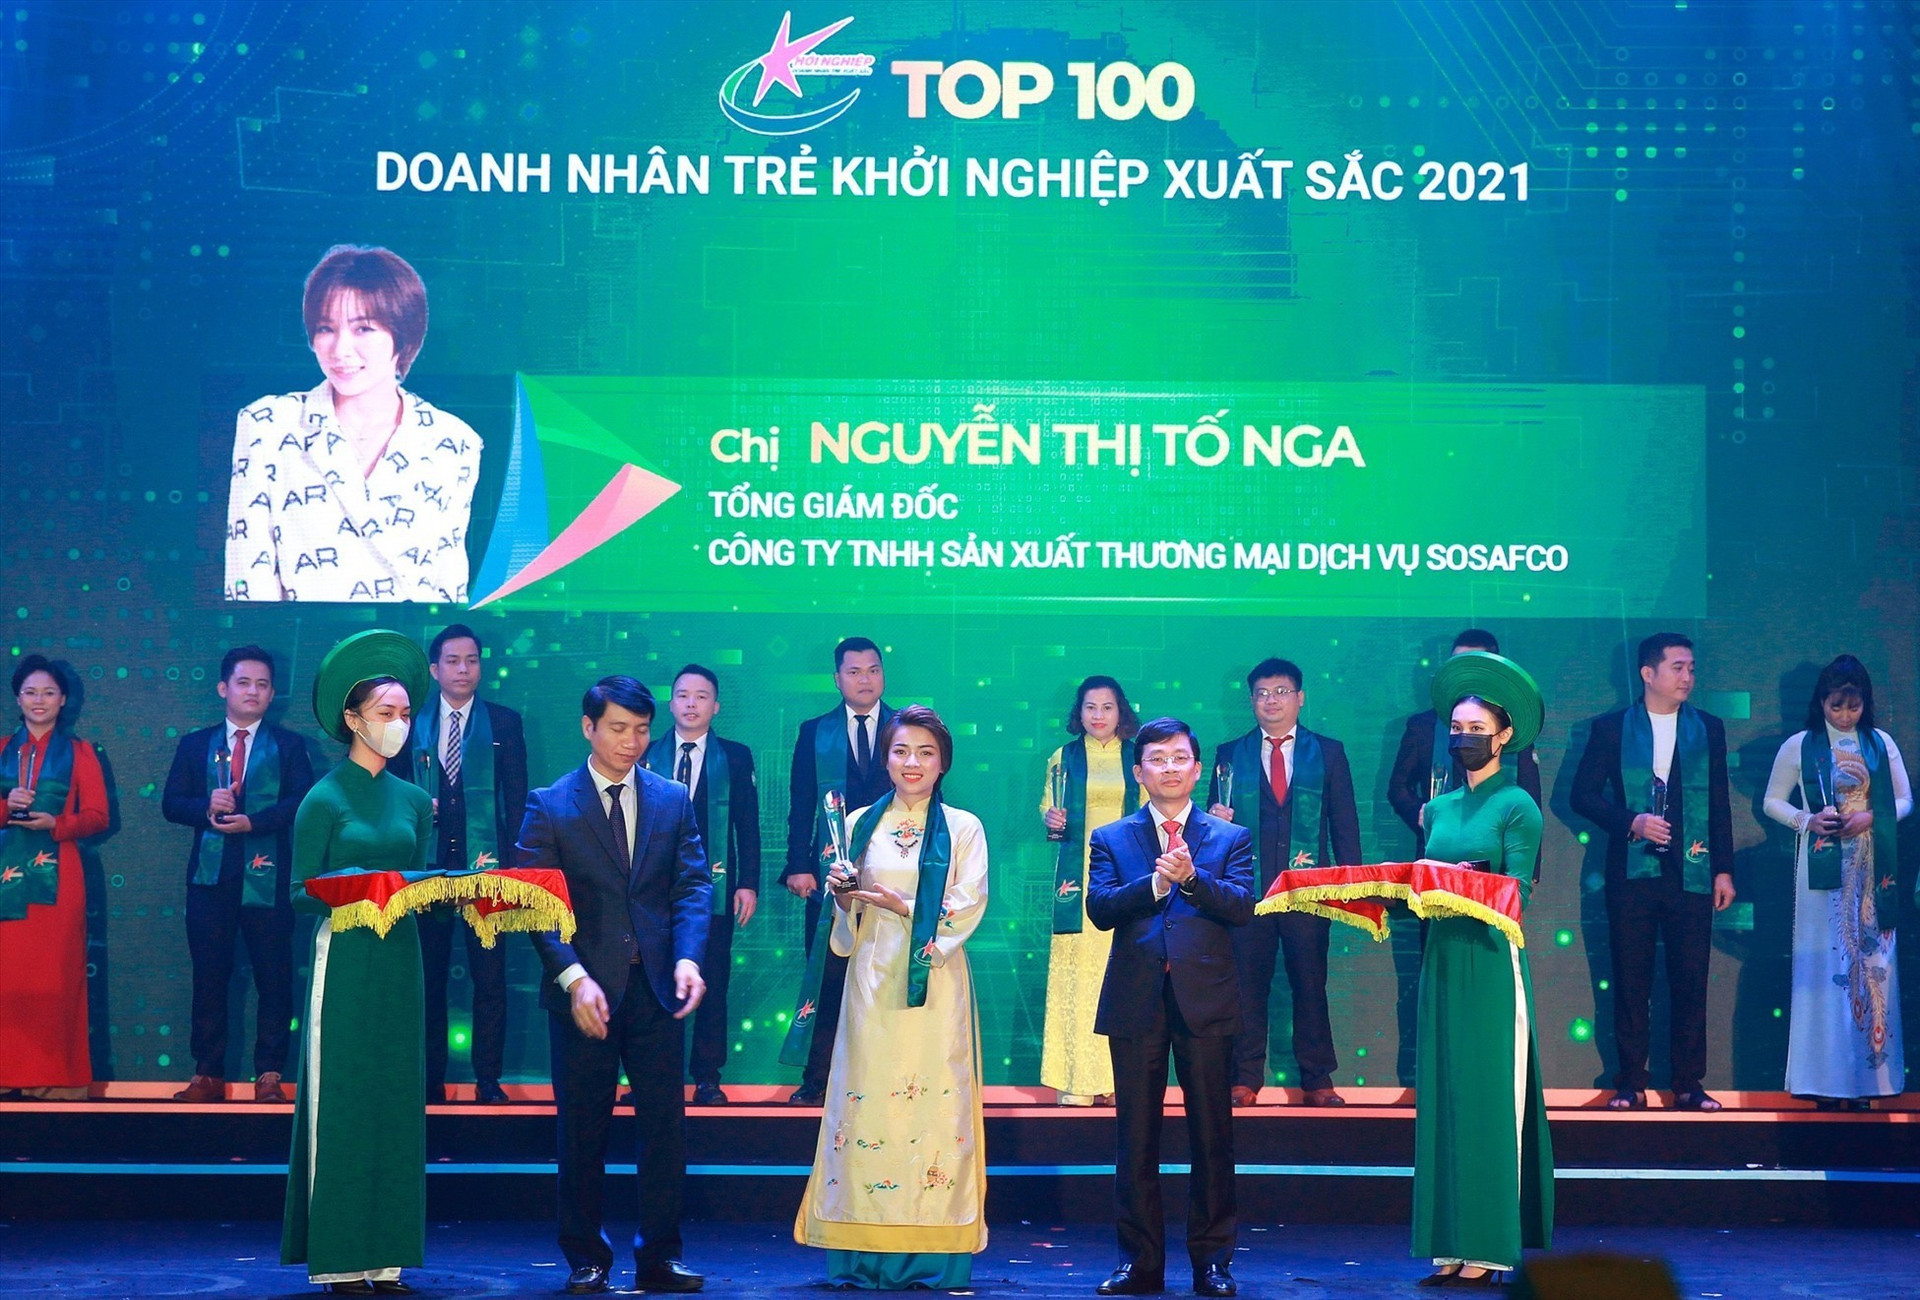 Chị Nguyễn Thị Tố Nga - Tổng Giám đốc Công ty TNHH Sản xuất thương mại dịch vụ Sosafco nhận Doanh nhân trẻ khởi nghiệp xuất sắc 2021. Ảnh: BTC